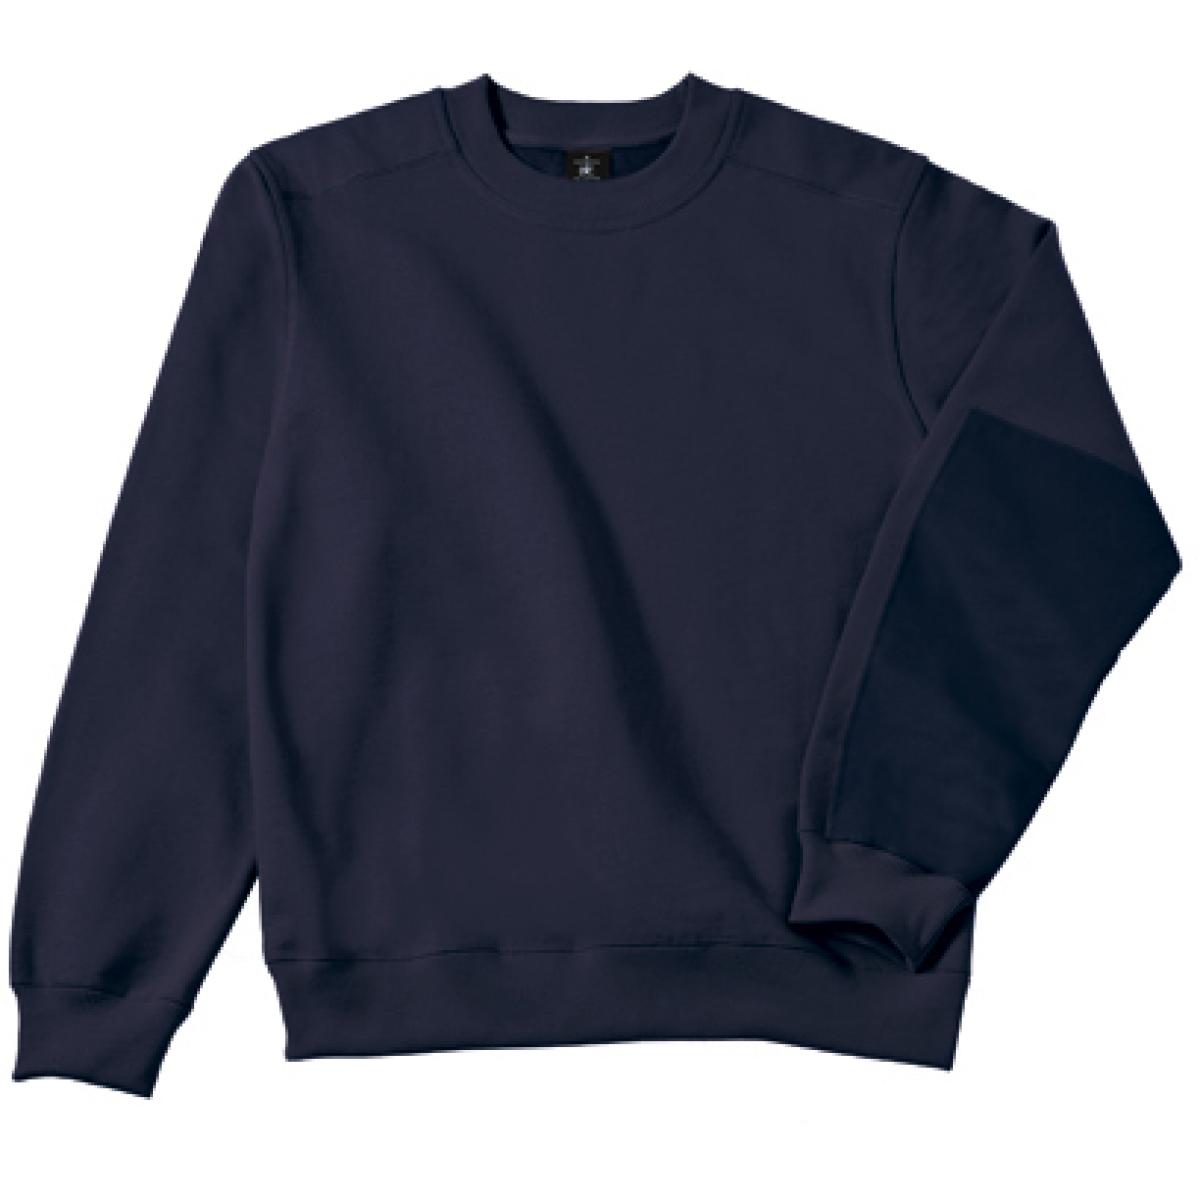 Hersteller: B&C Pro Collection Herstellernummer: WUC20 Artikelbezeichnung: Hero Pro Workwear Sweatshirt + Waschbar bis 60 °C Farbe: Navy